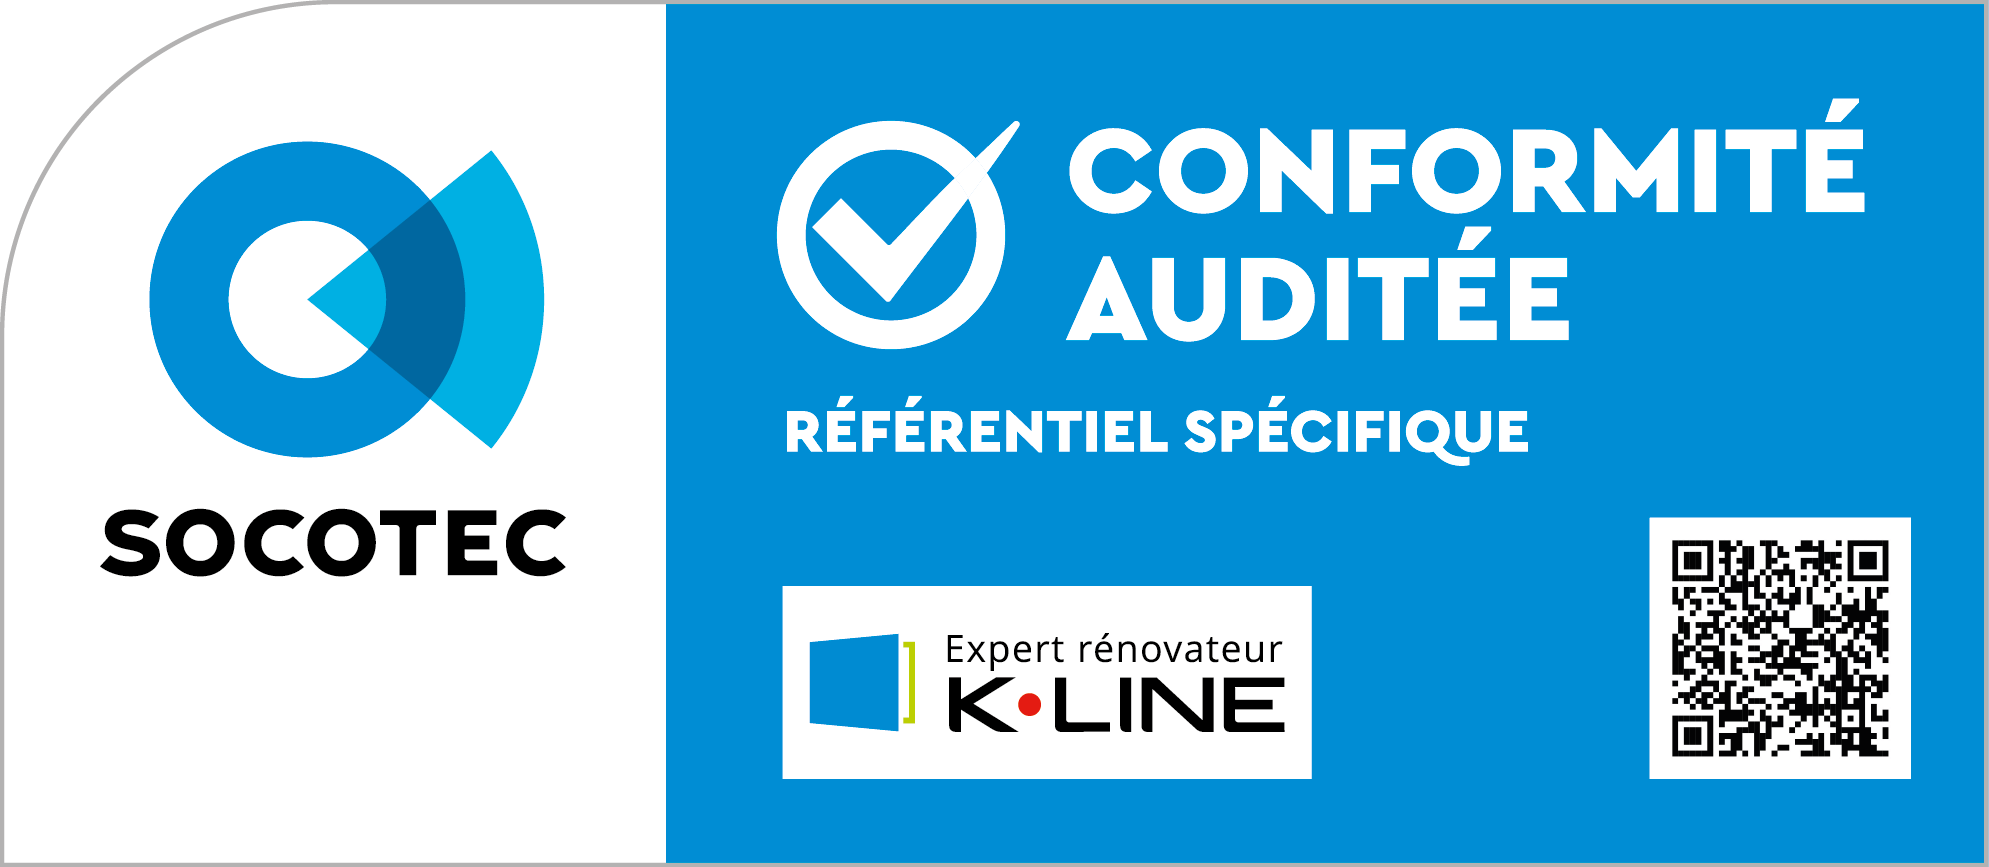 Conformité Audité Socotec K-line